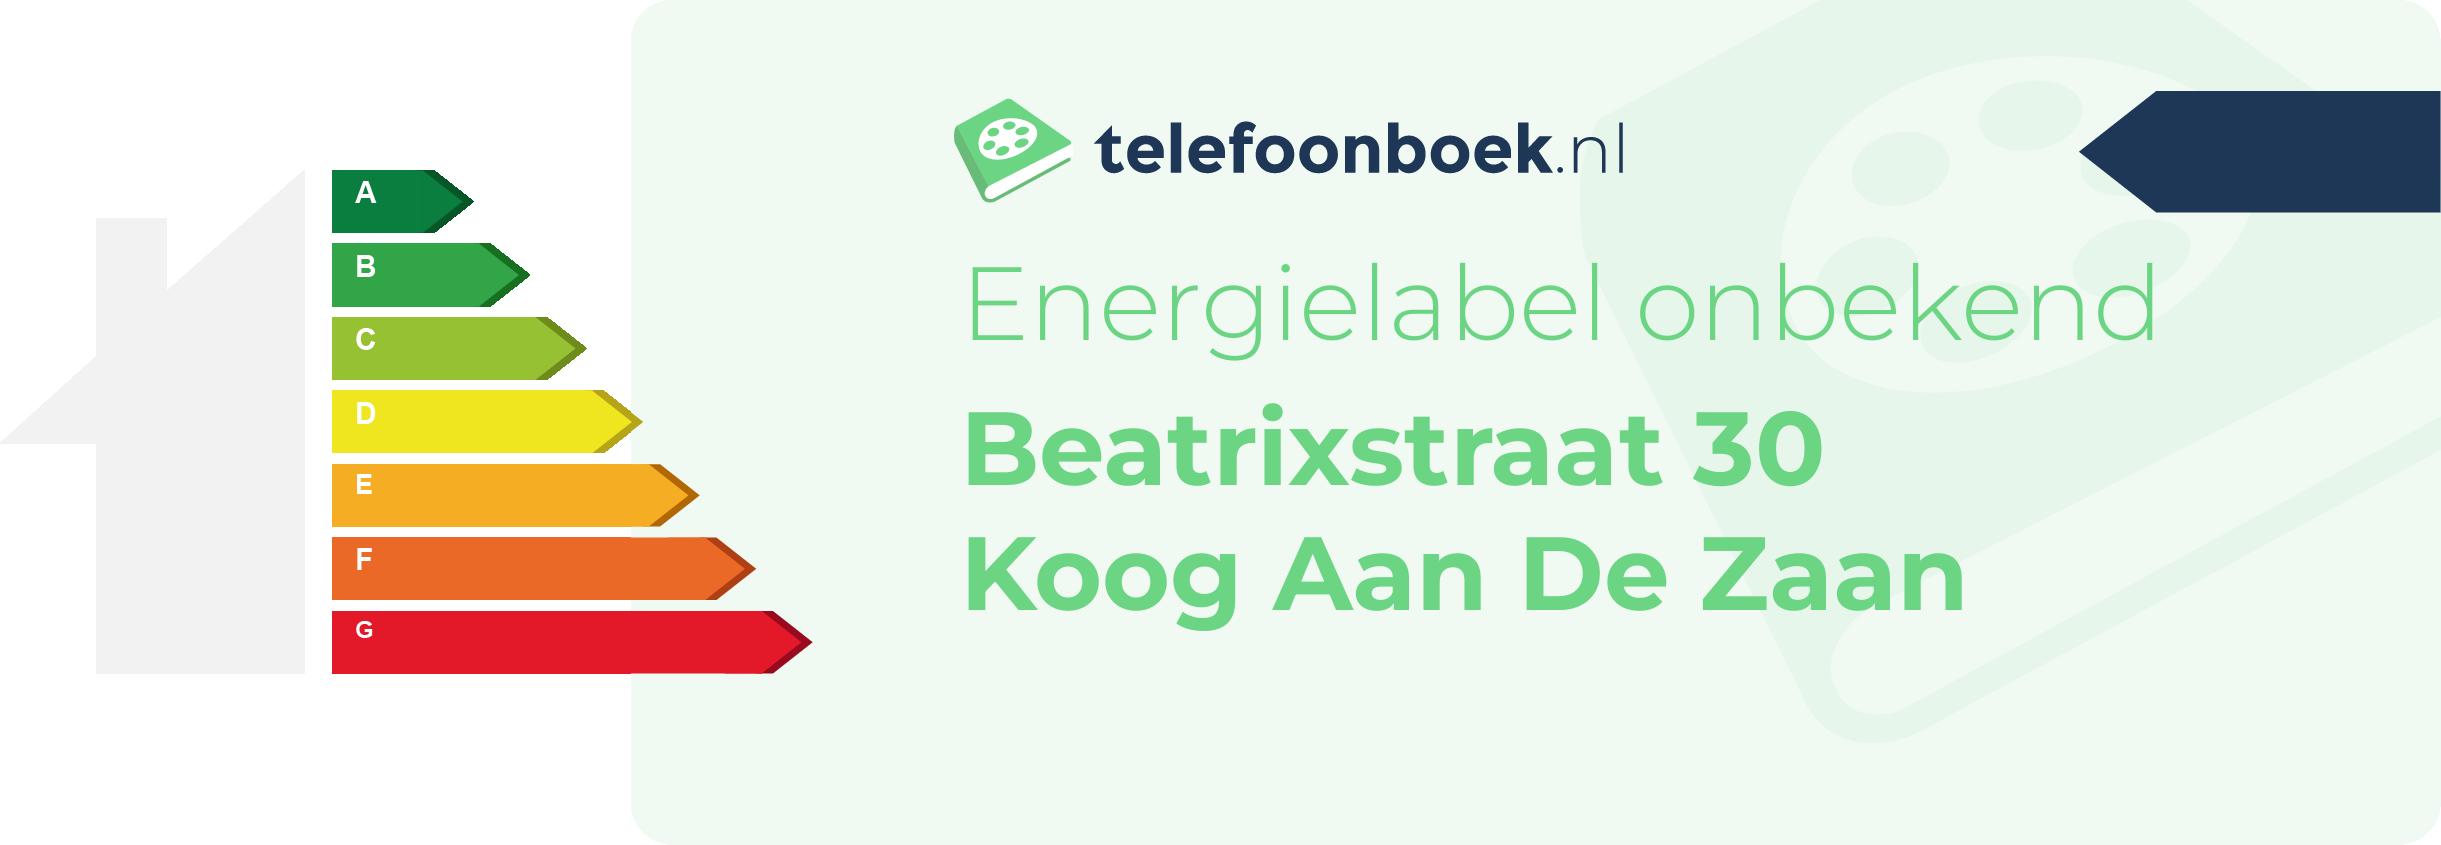 Energielabel Beatrixstraat 30 Koog Aan De Zaan